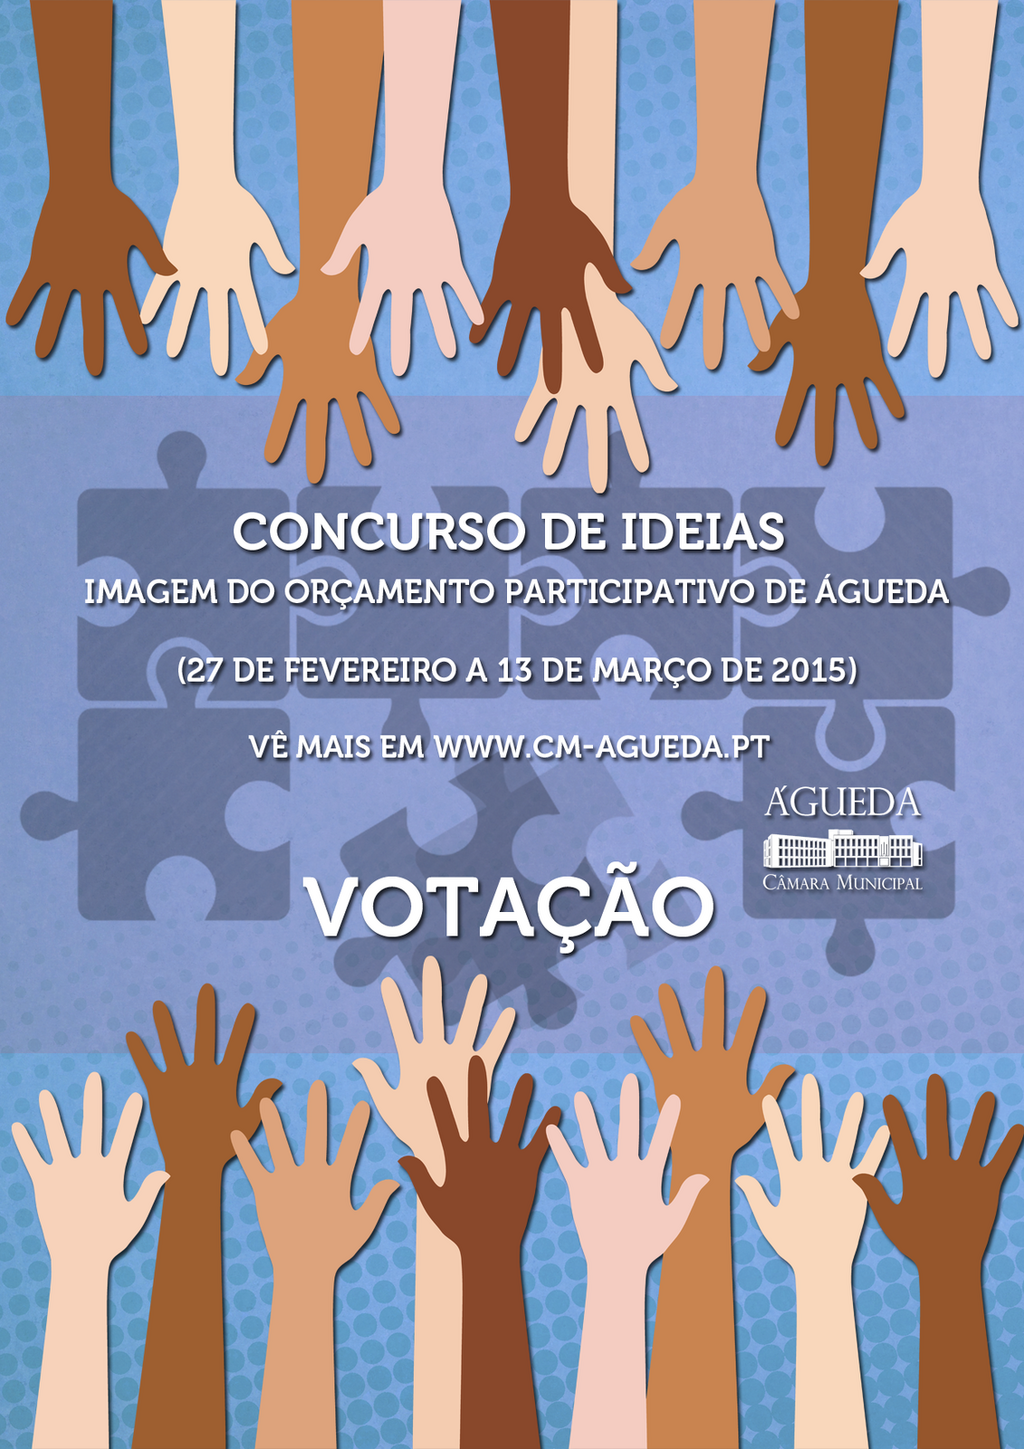 Cidadãos convidados a votarem imagem do Orçamento Participativo de Águeda